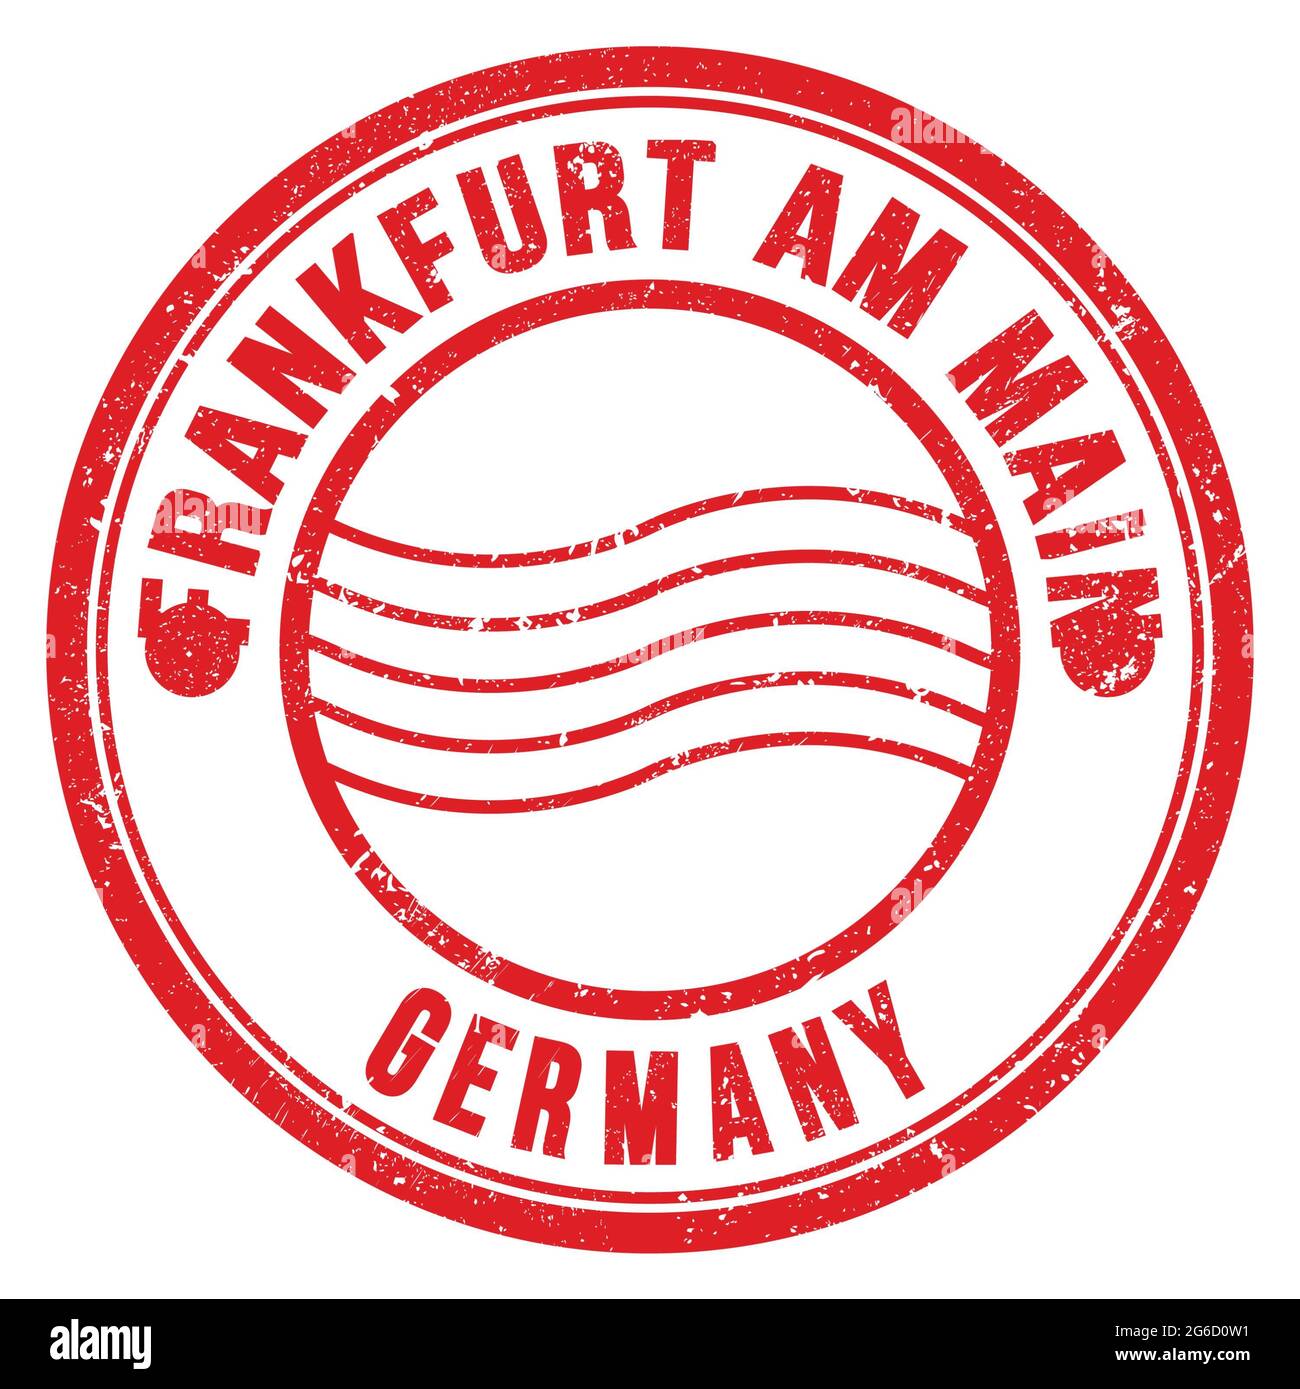 FRANCFORT AM MAIN - ALLEMAGNE, mots écrits sur le timbre postal rond rouge Banque D'Images